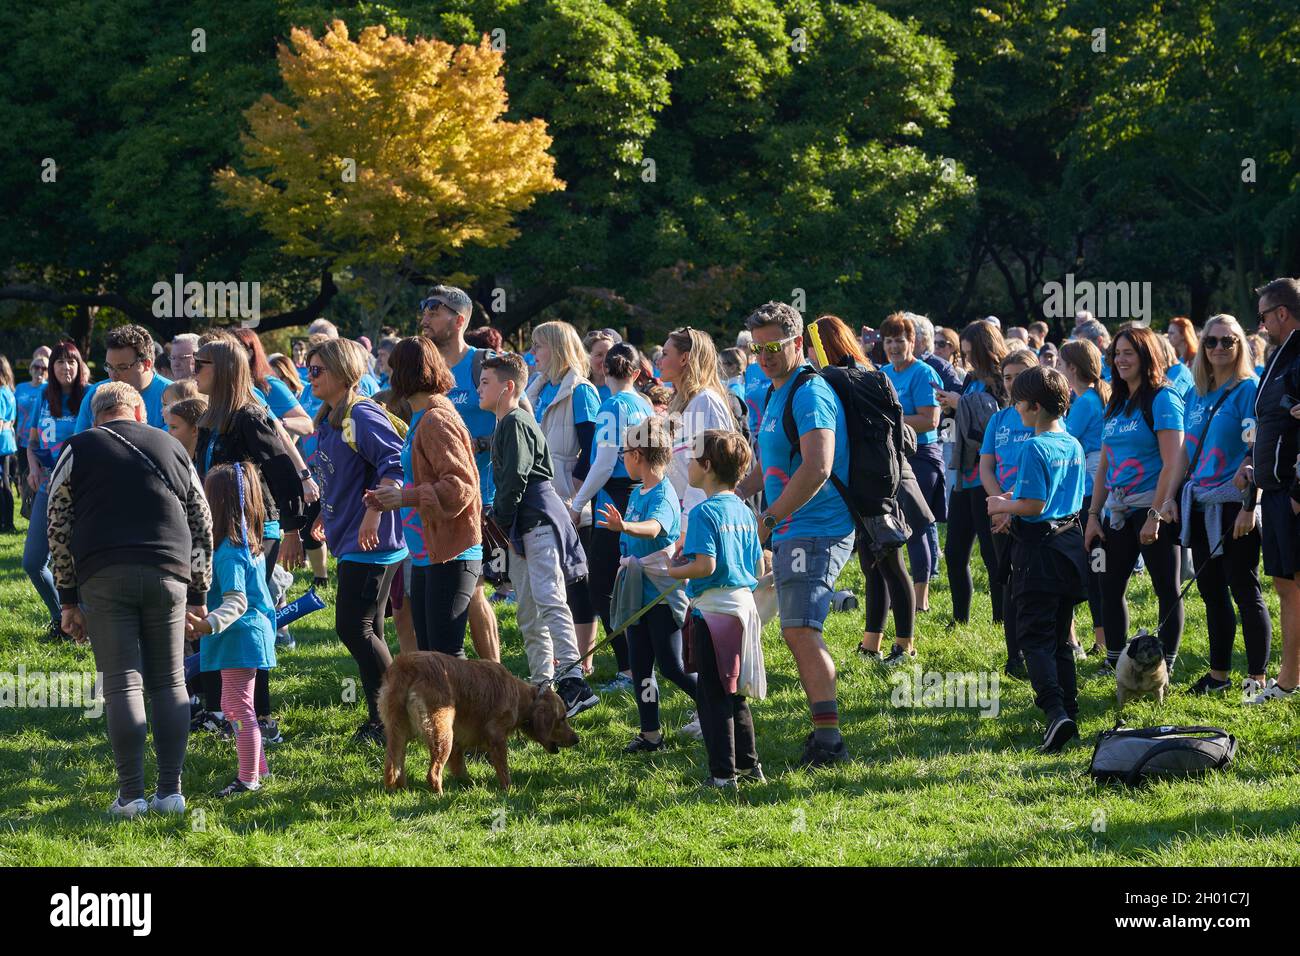 Wohltätigkeitswanderer bei einem Gedächtnisspaziergang im Bute Park, Cardiff, um Geld für die Erforschung der Alzheimer-Krankheit zu sammeln Stockfoto